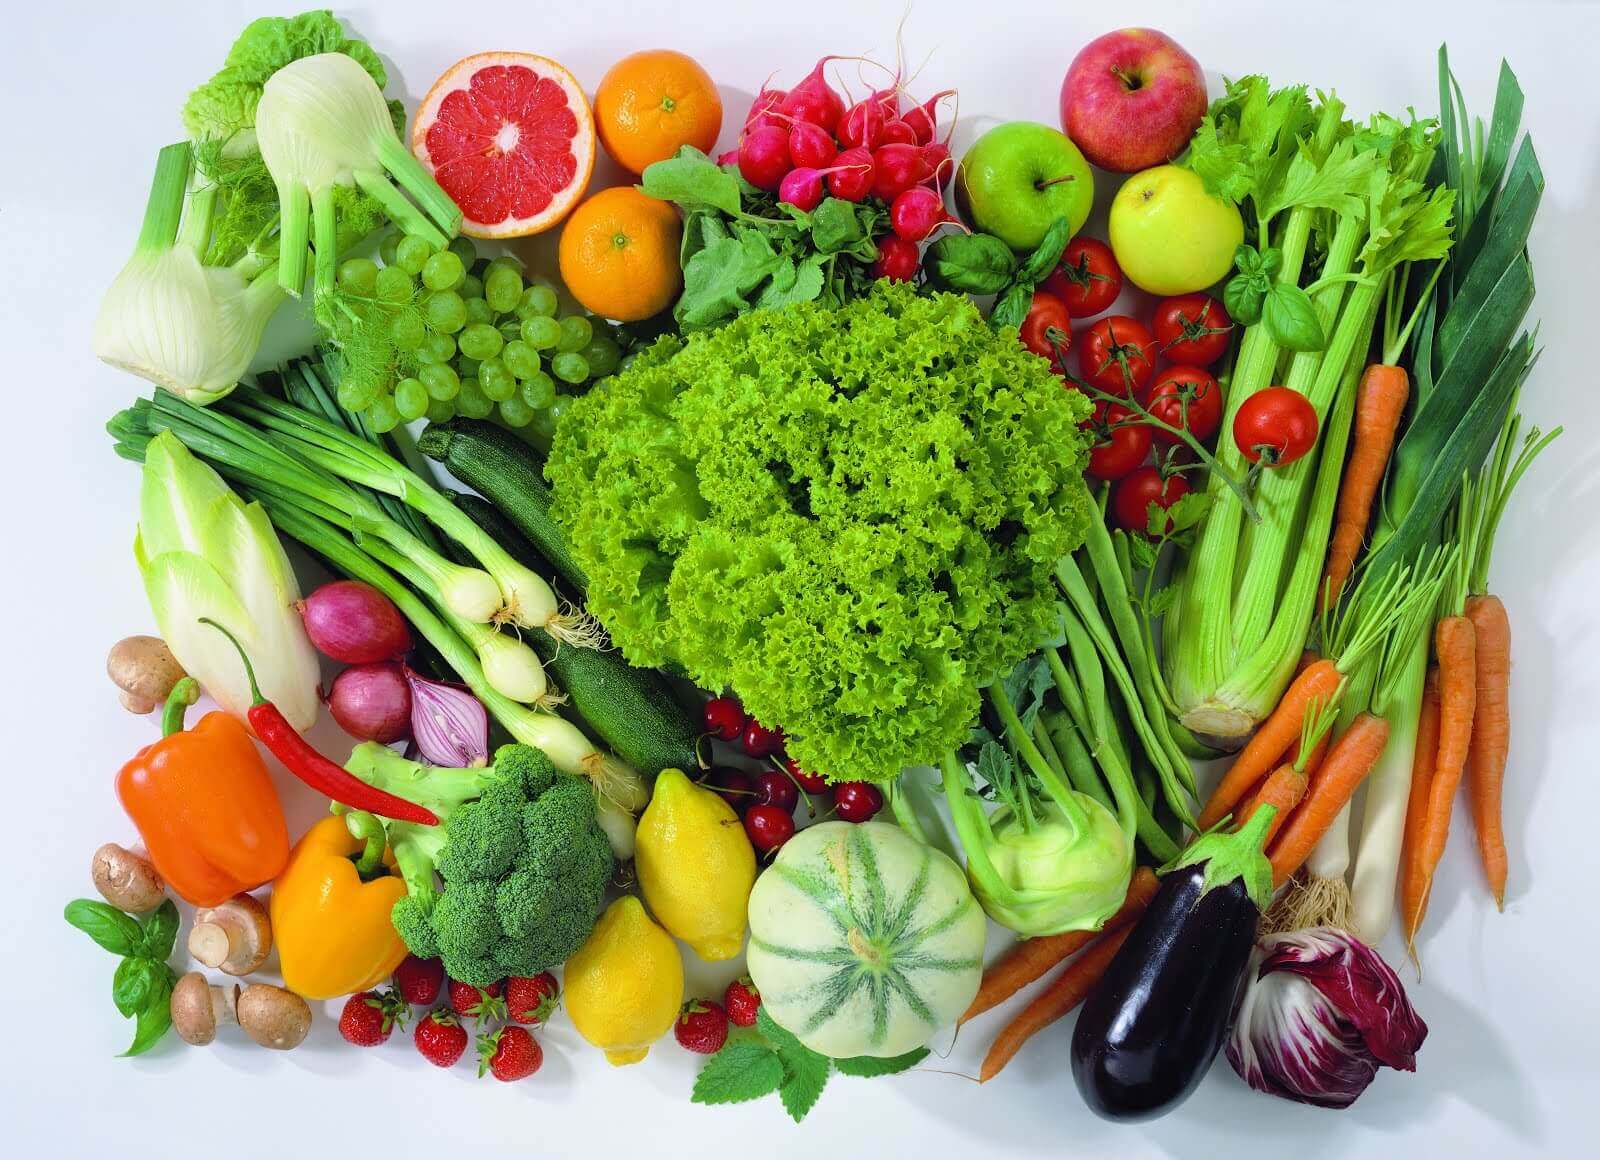 Frutta e verdura colorata.